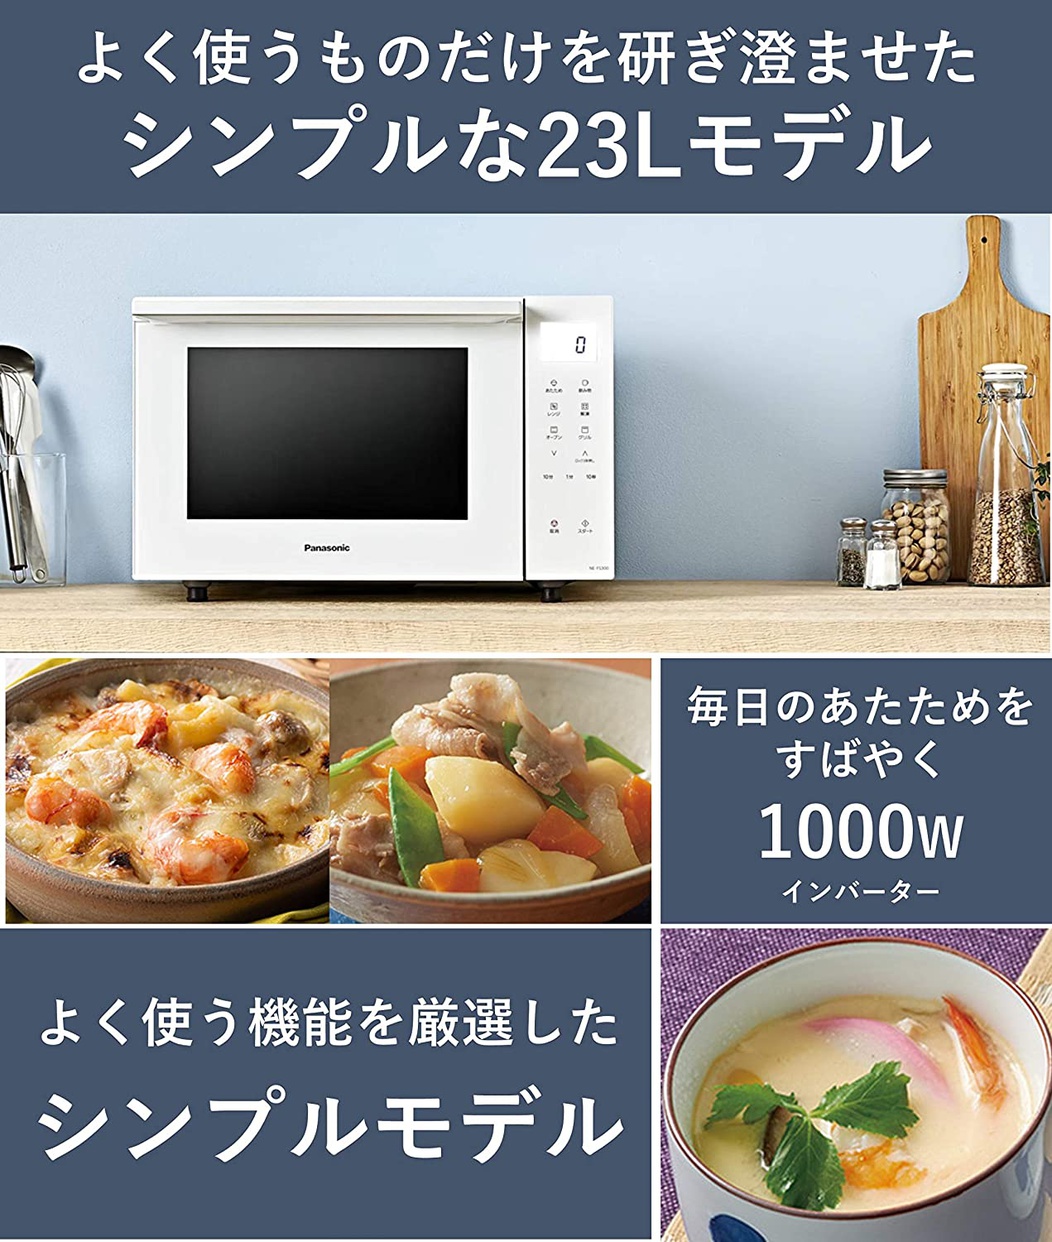 Panasonic(パナソニック) オーブンレンジ NE-FS300の商品画像2 